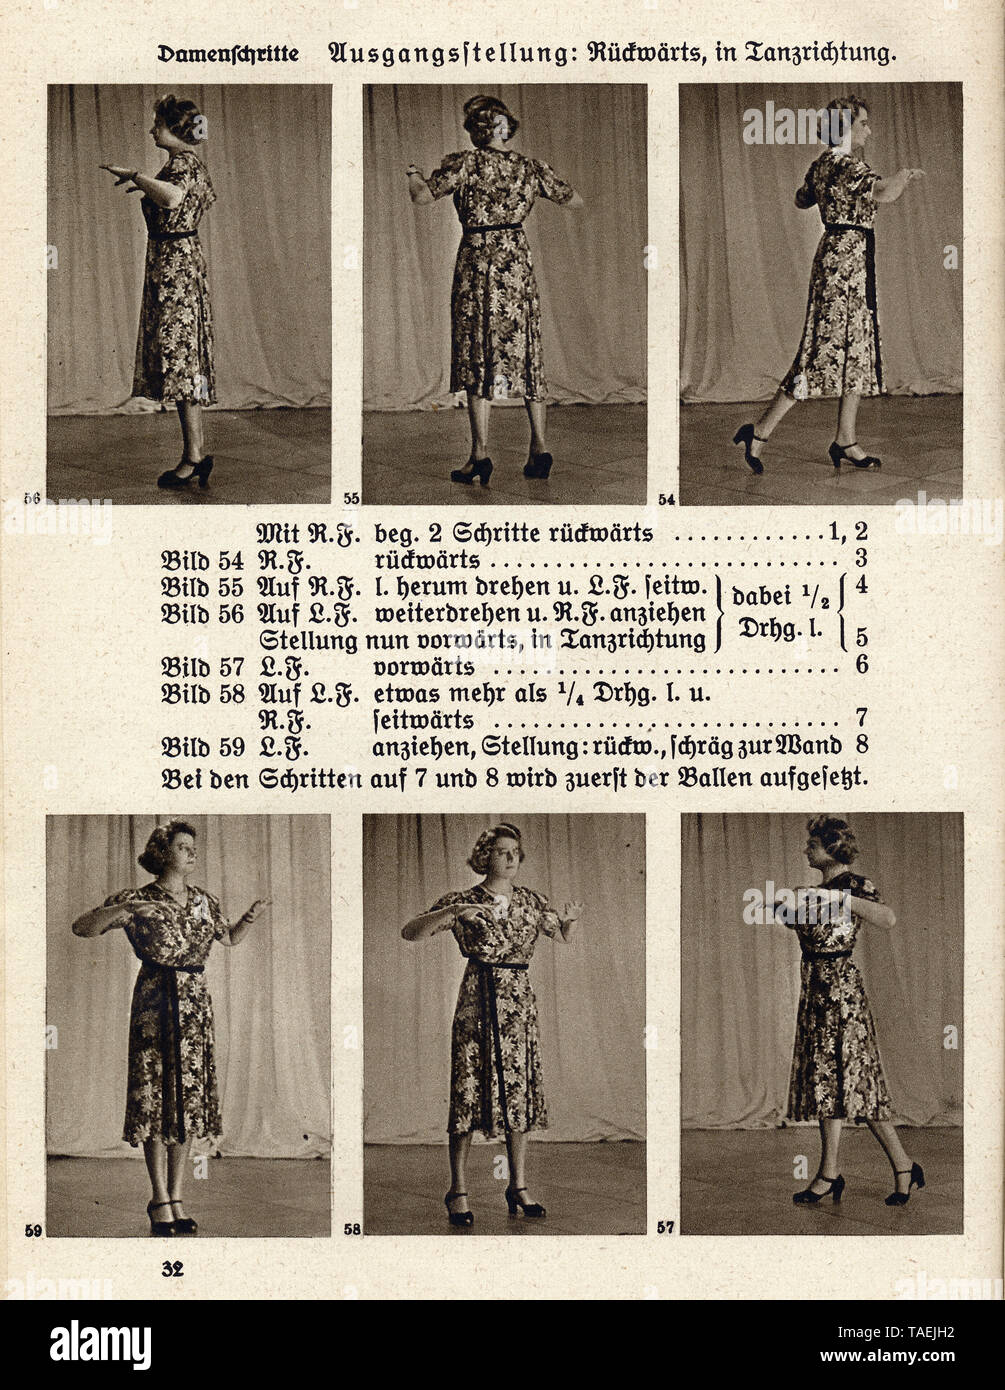 Anleitung zum Marschtanz, Damenschritte, eine Seite aus dem deutschen Buch 'Der Tanz im Selbstunterricht, Rudolph'sche Verlagsbuchhandlung, Dresda', 1941 Foto Stock